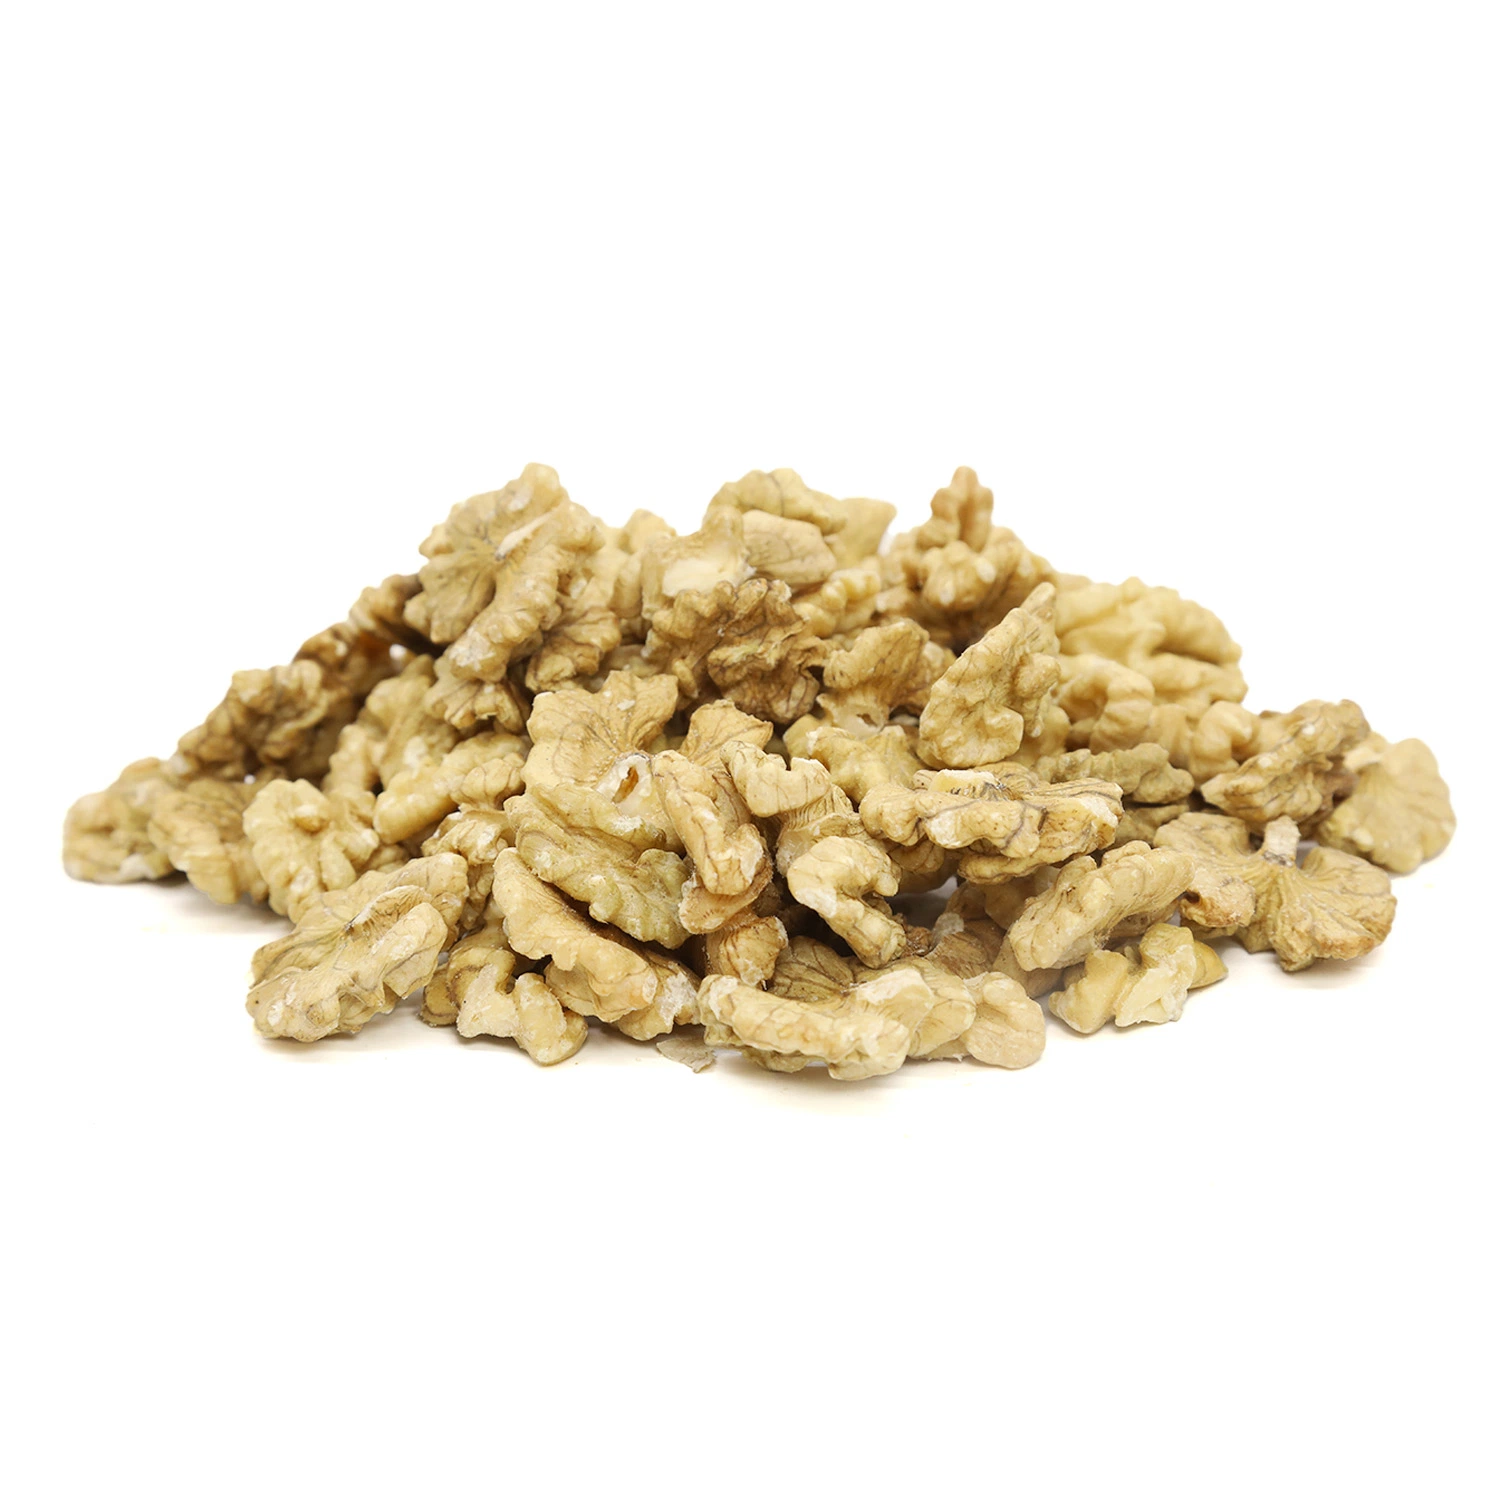 China Walnut Supplier Xinjiang Walnut Kernels New Crop Raw Walnut Wholesale